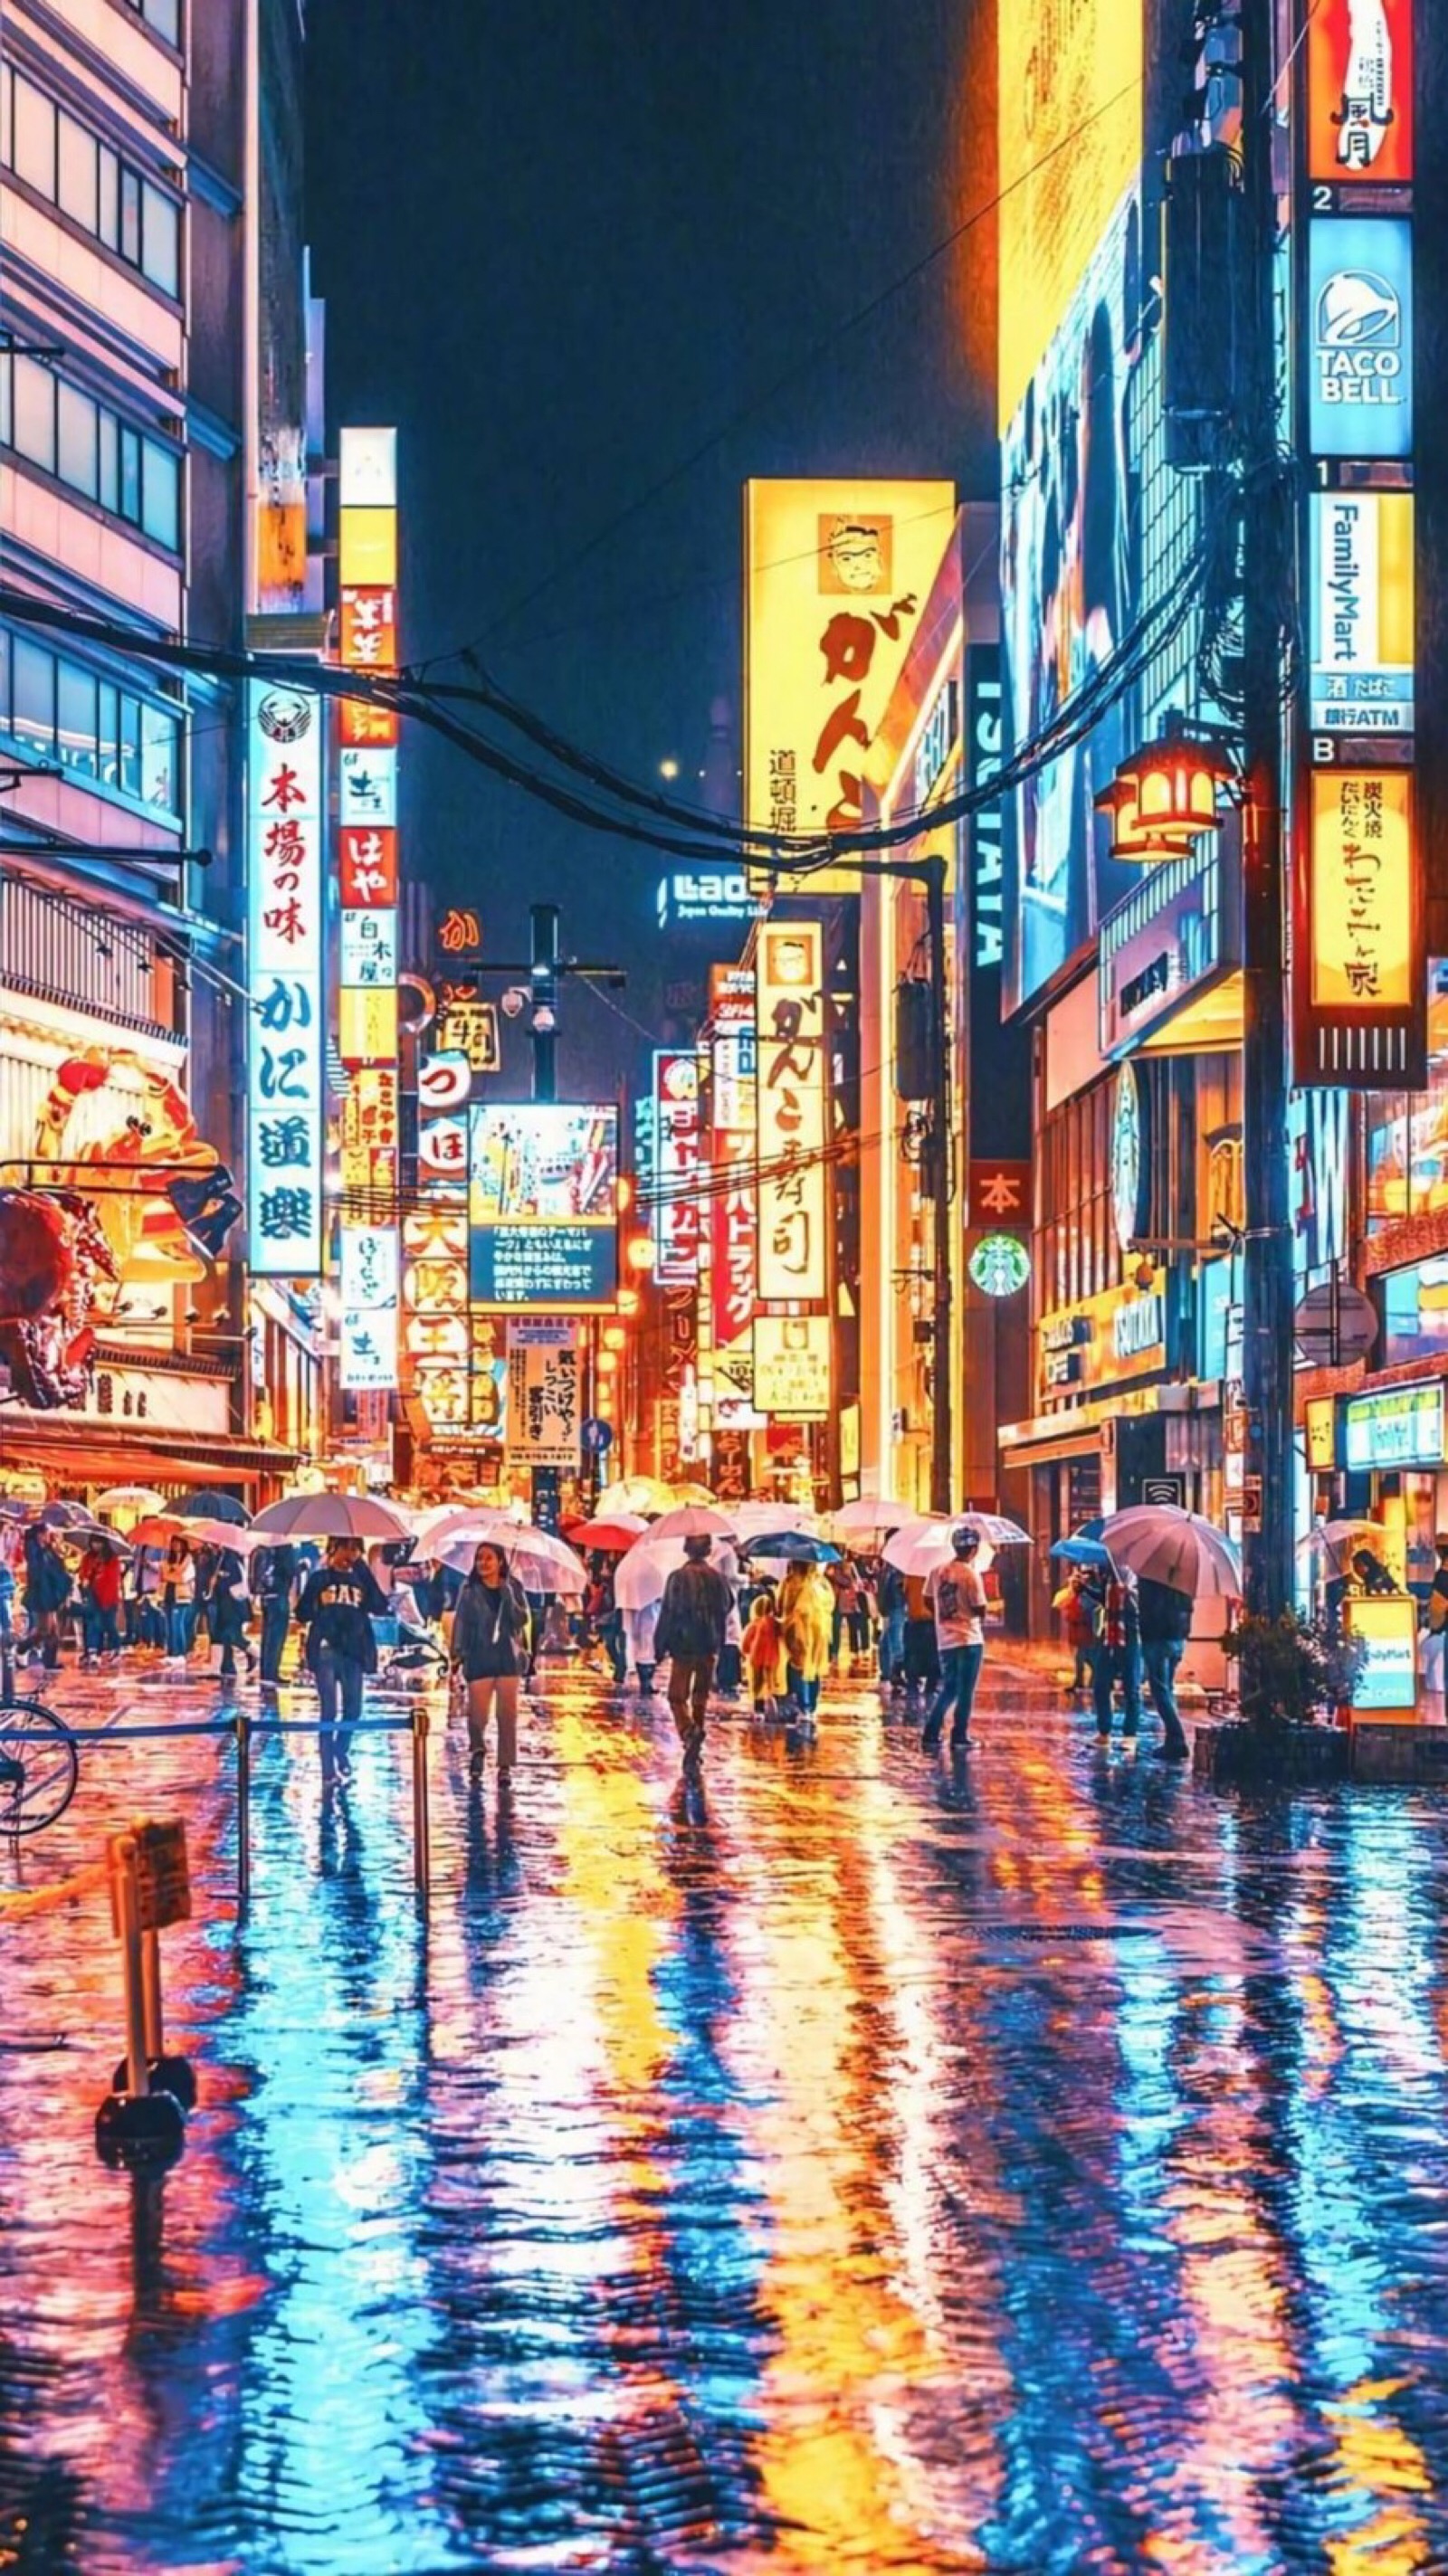 霓虹灯下的日本街道 | 摄影师:naohiro yako